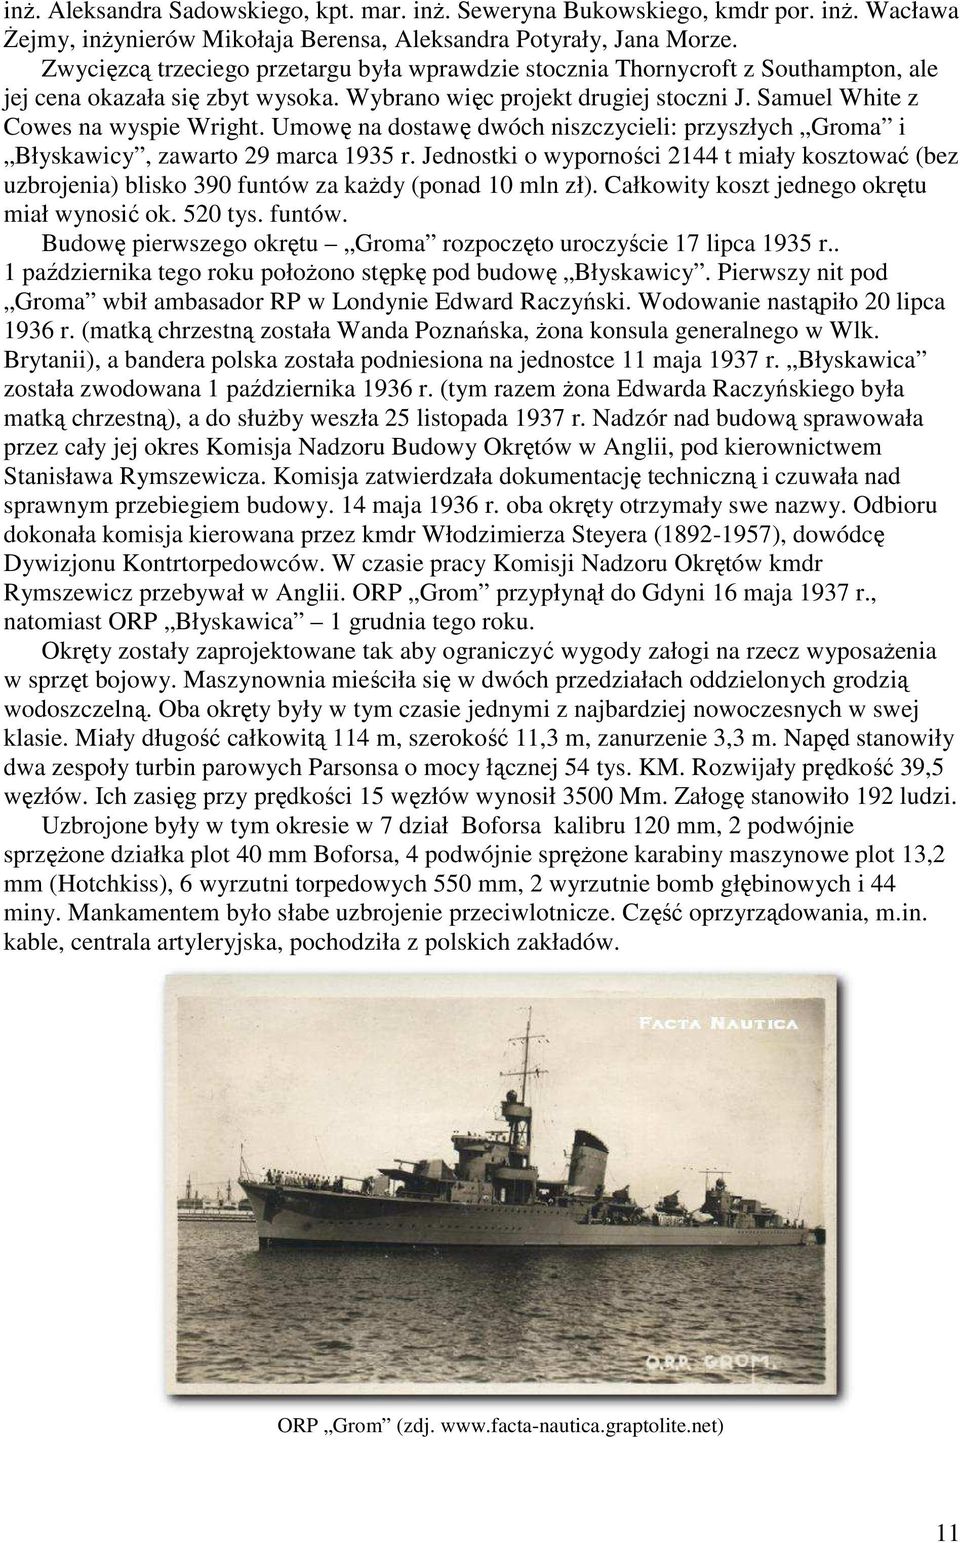 Umowę na dostawę dwóch niszczycieli: przyszłych Groma i Błyskawicy, zawarto 29 marca 1935 r.